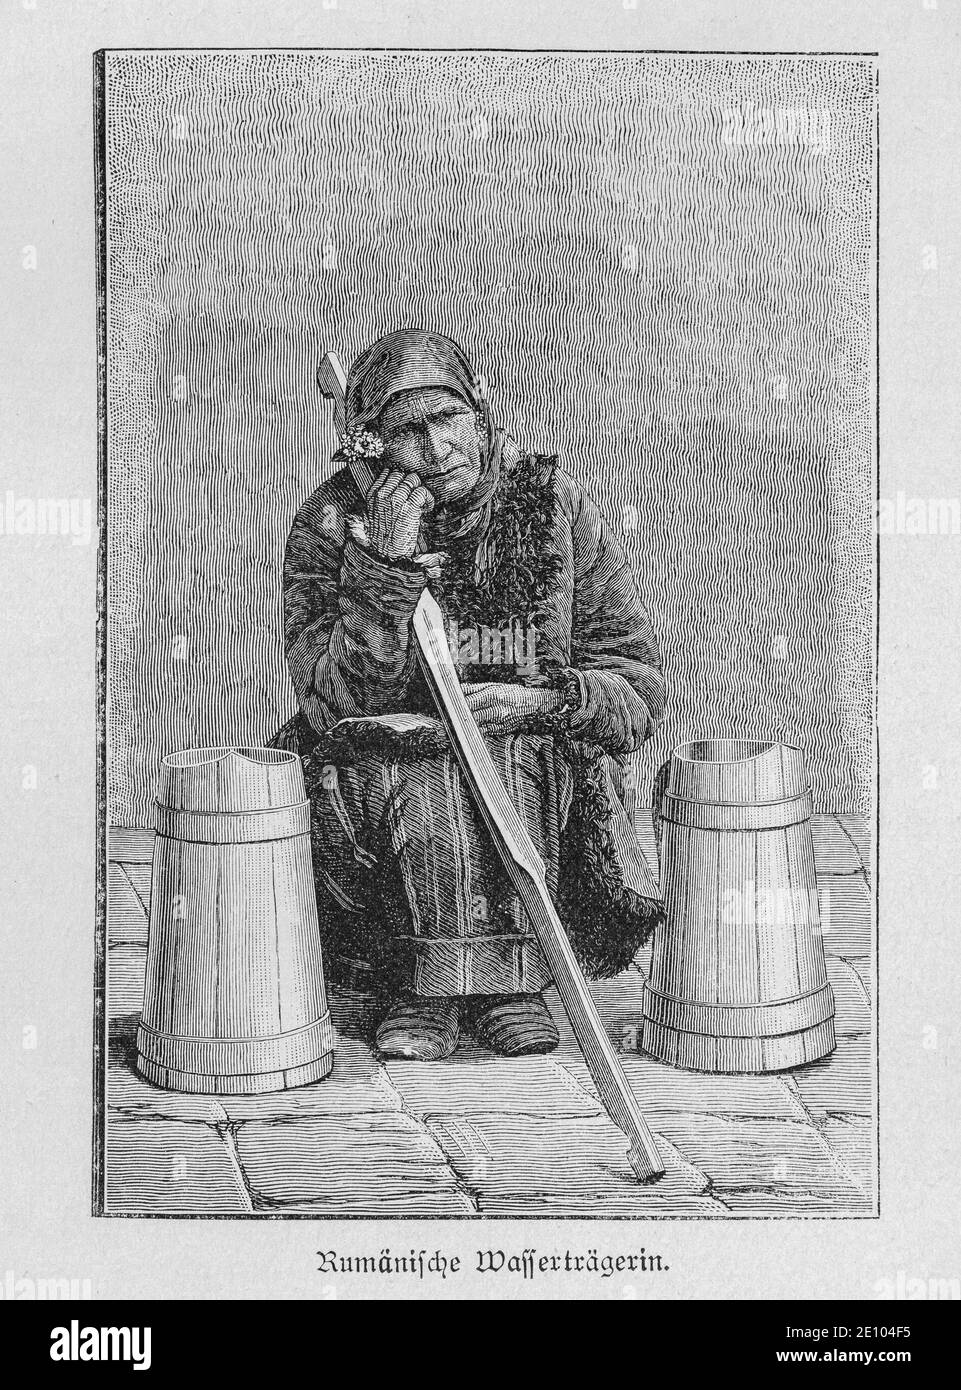 'Rumänische Wasserträgerin', vieille femme roumaine qui la gagne en vie comme transporteur d'eau, Bucarest, Roumanie, 'Die Hauptstädte der Welt', vers 1897 Banque D'Images